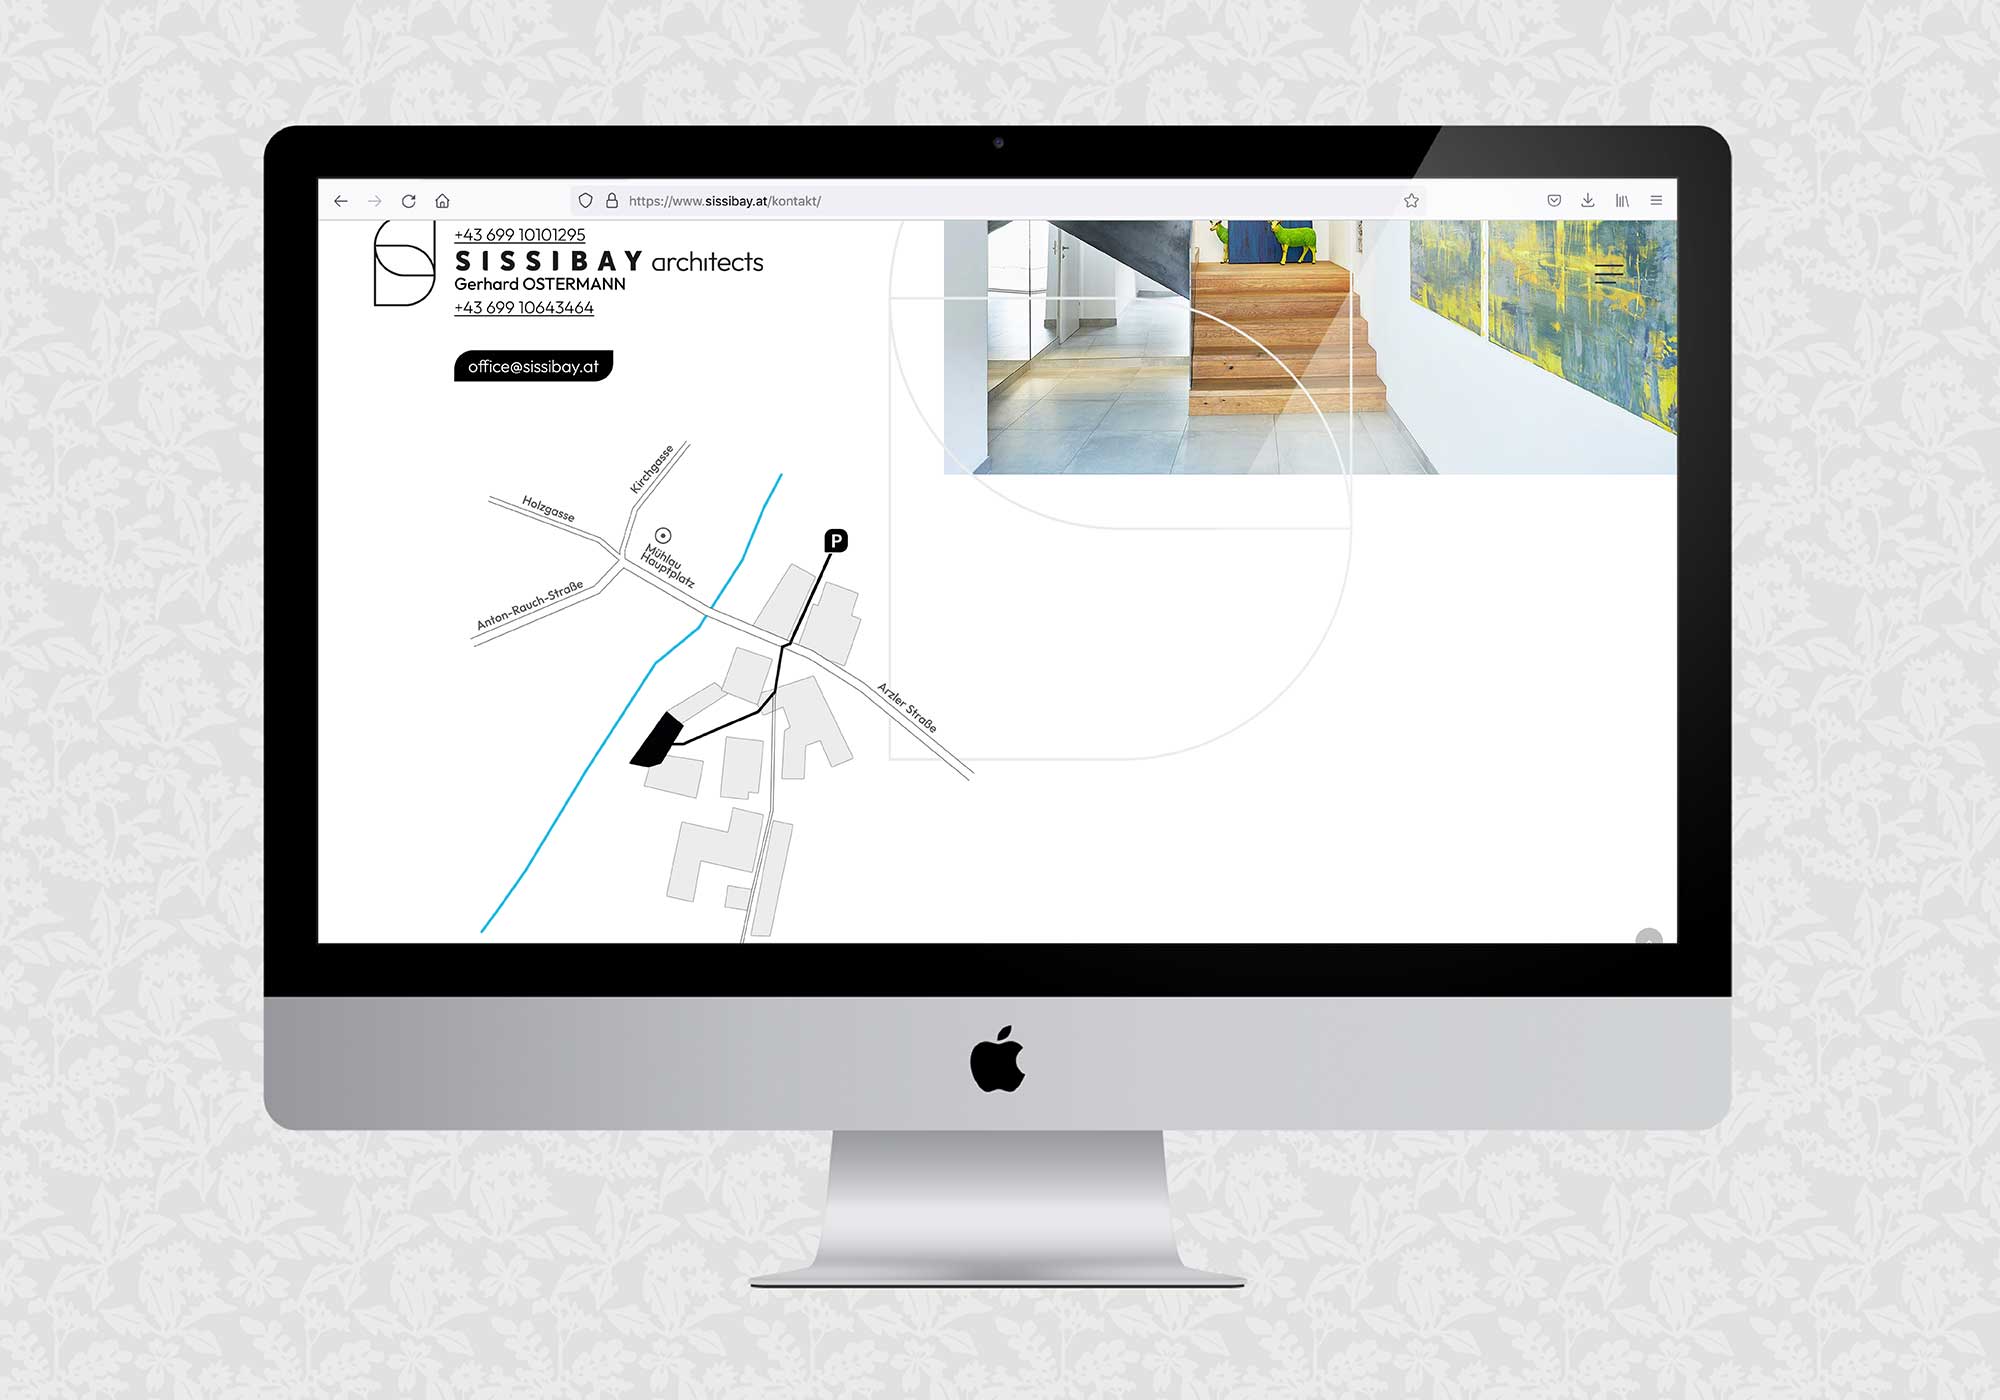 Website für SISSIBAY architects | © fein fein